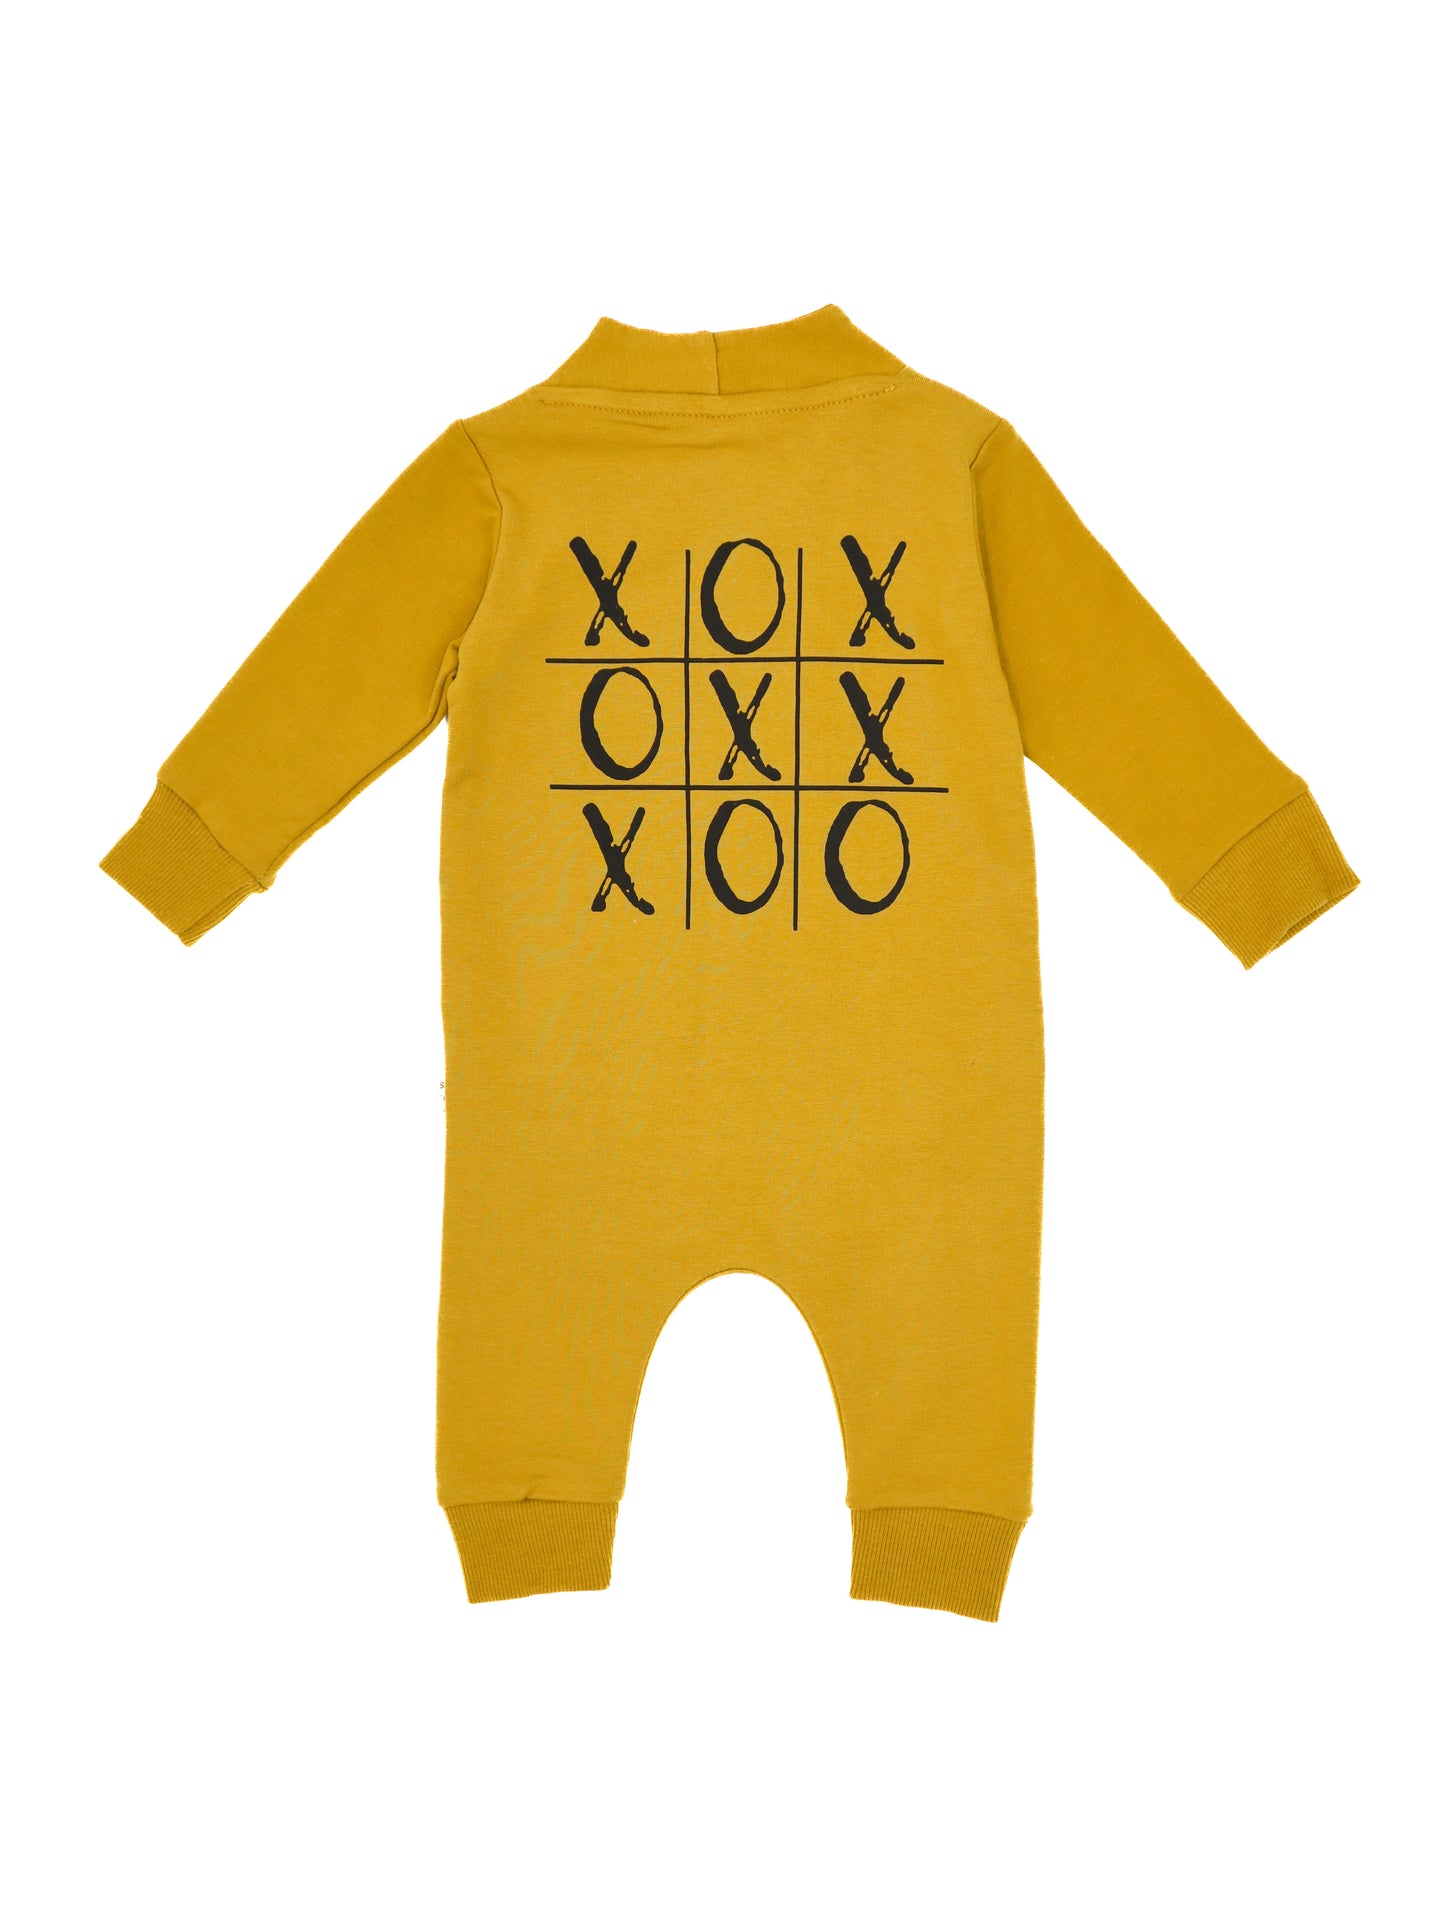 Baby Jumpsuıt Wıth 'OXO' Prınt Desıgn